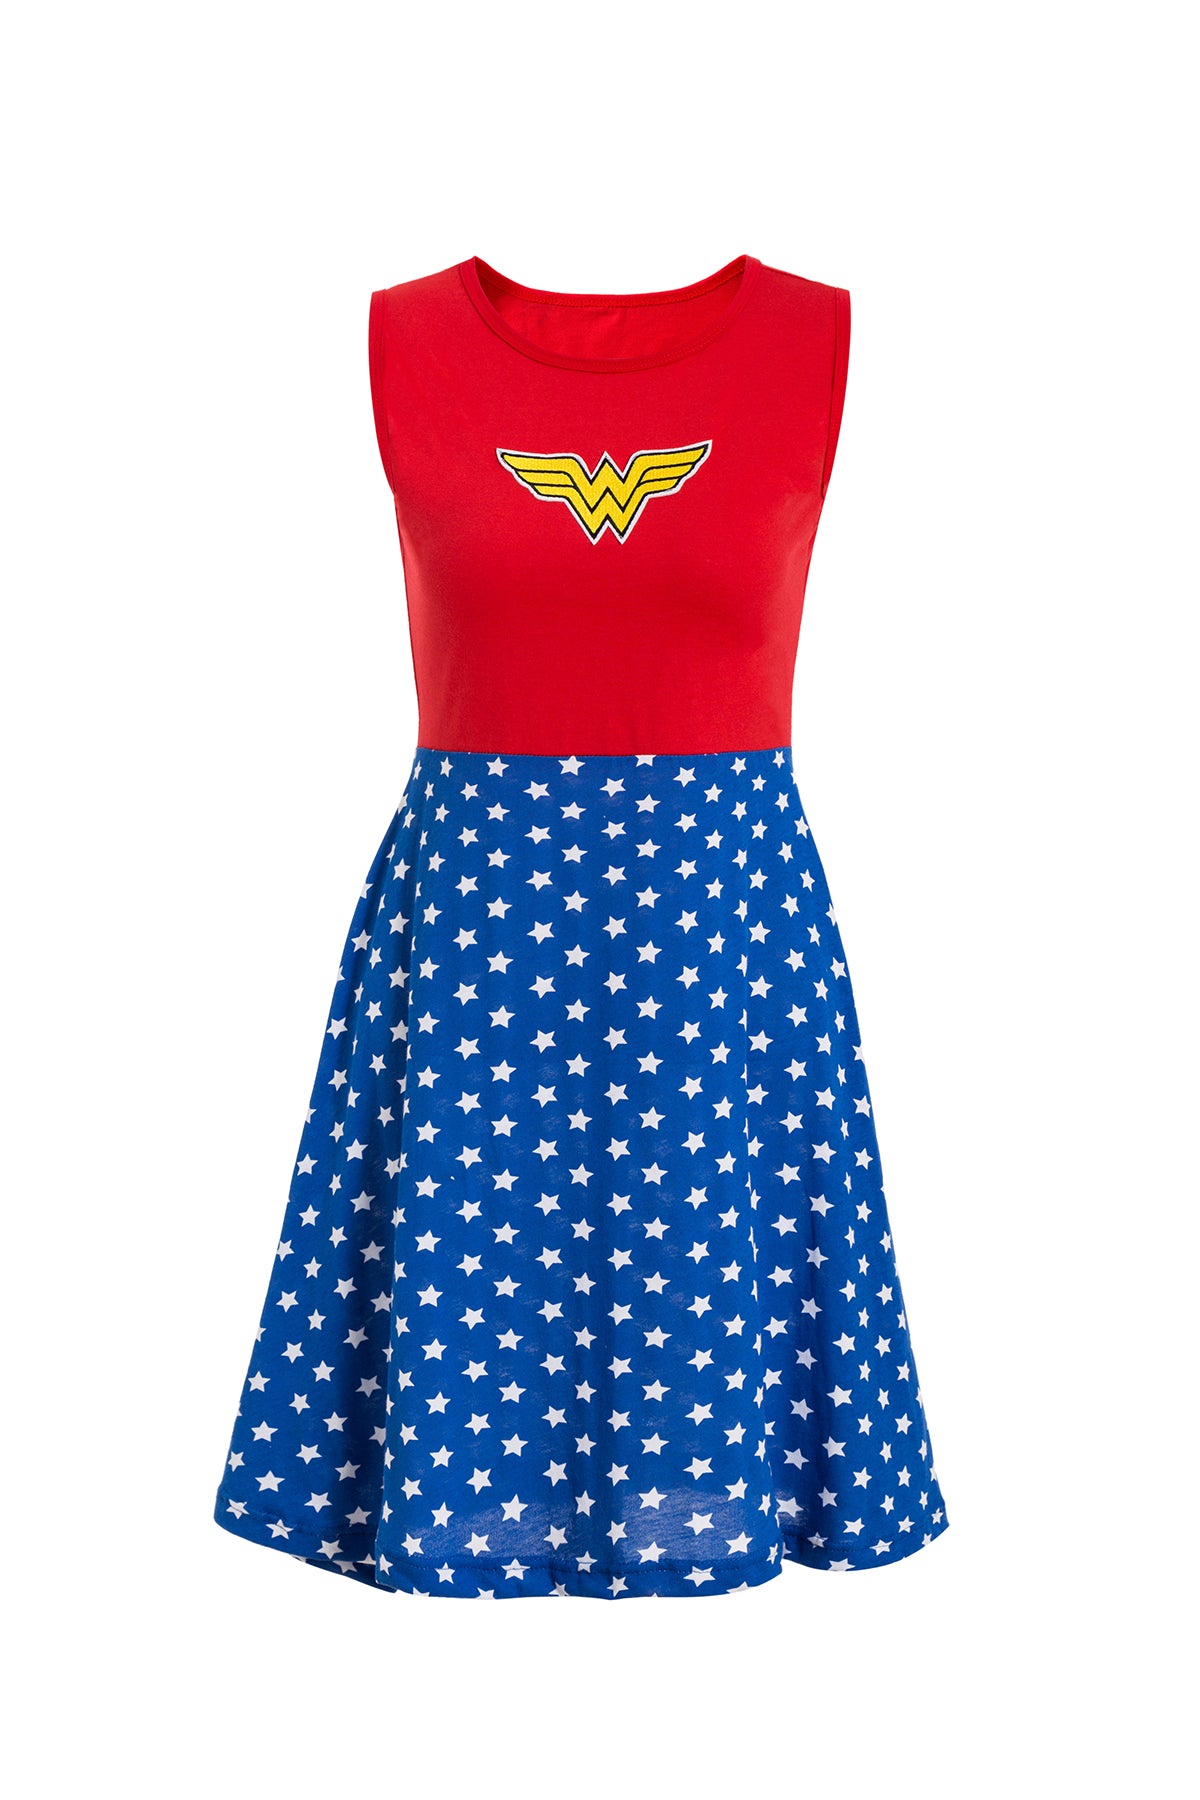 Adult Wonder Women inspired fancy dress